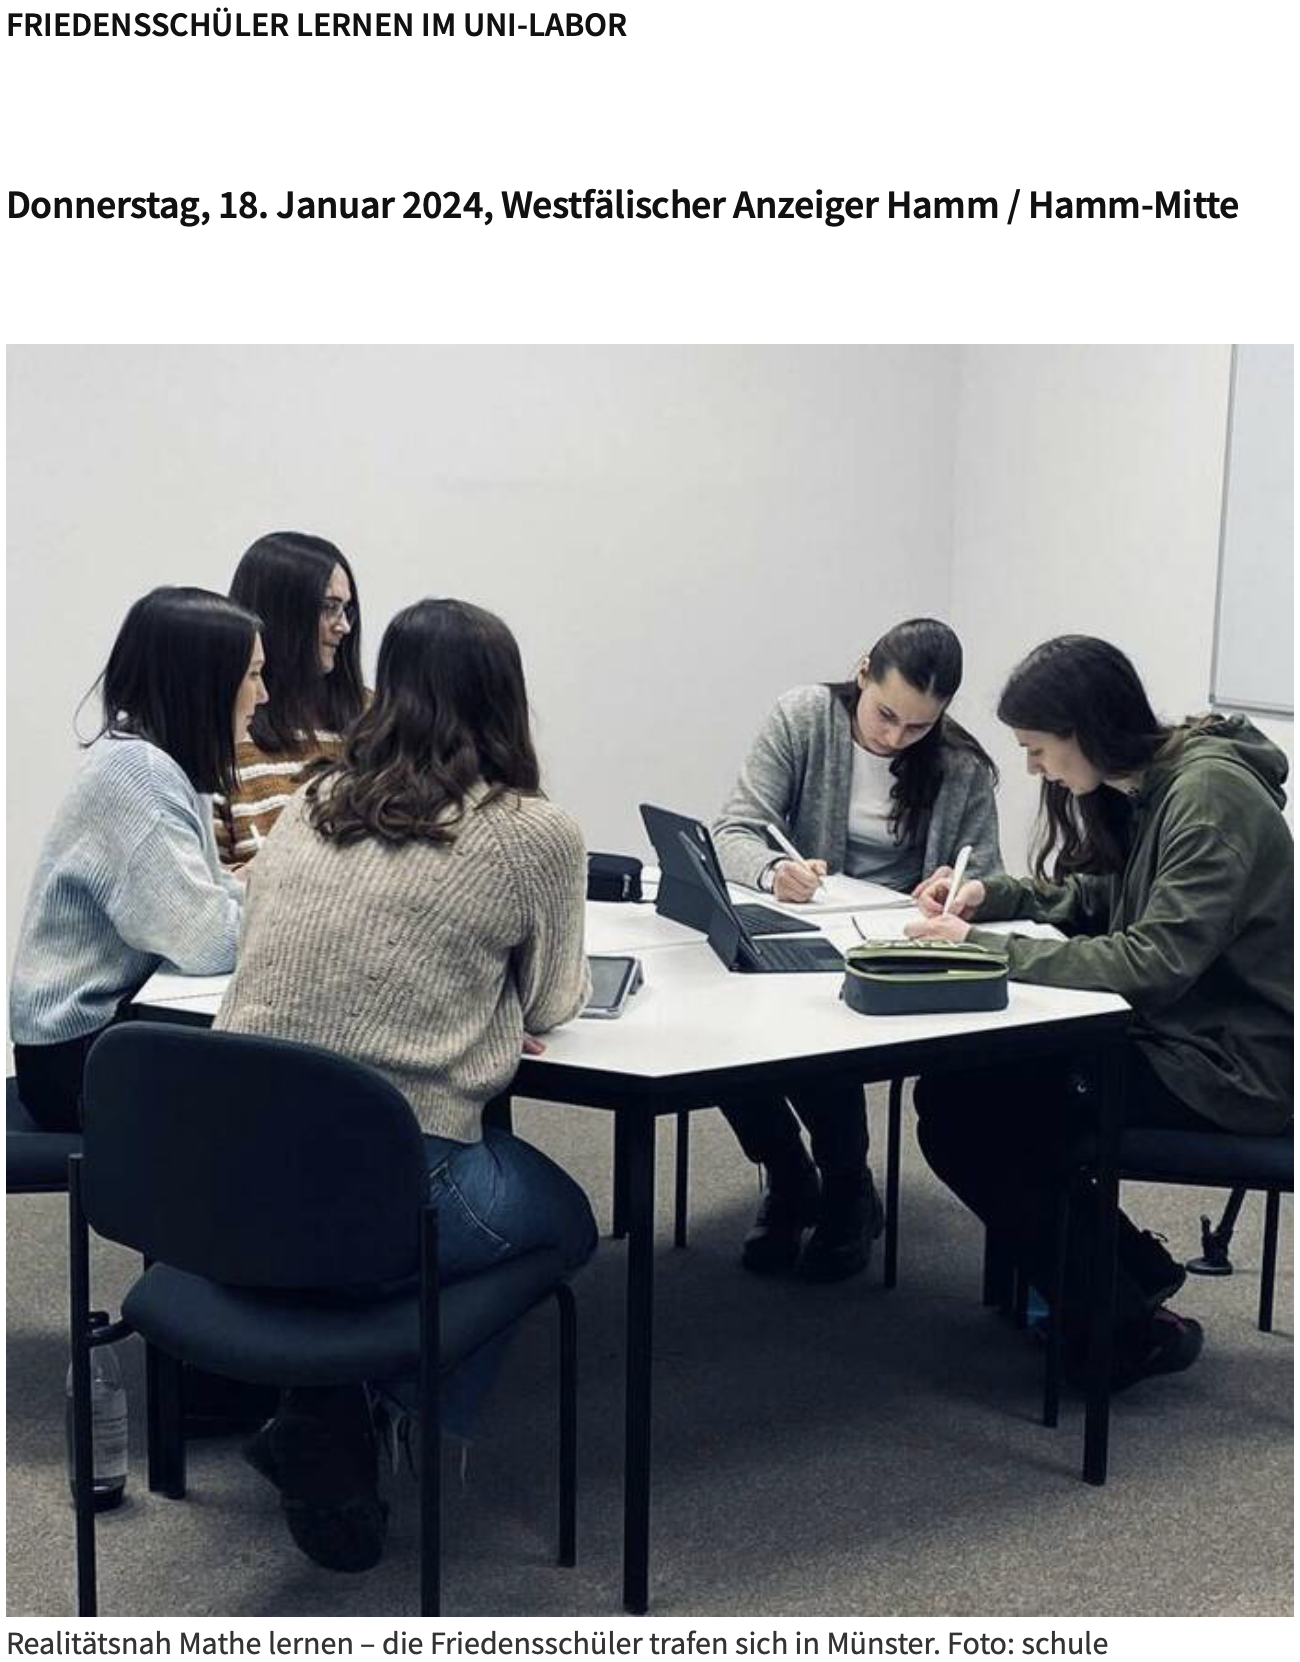 Das Bild zeigt einen Screenshot von der Schulhomepage  zum Besuch im Uni-Labor Münster. Auf dem Foto ist eine Gruppe von Schülerinnen bei ihrer Arbeit im Unilabor zu sehen.